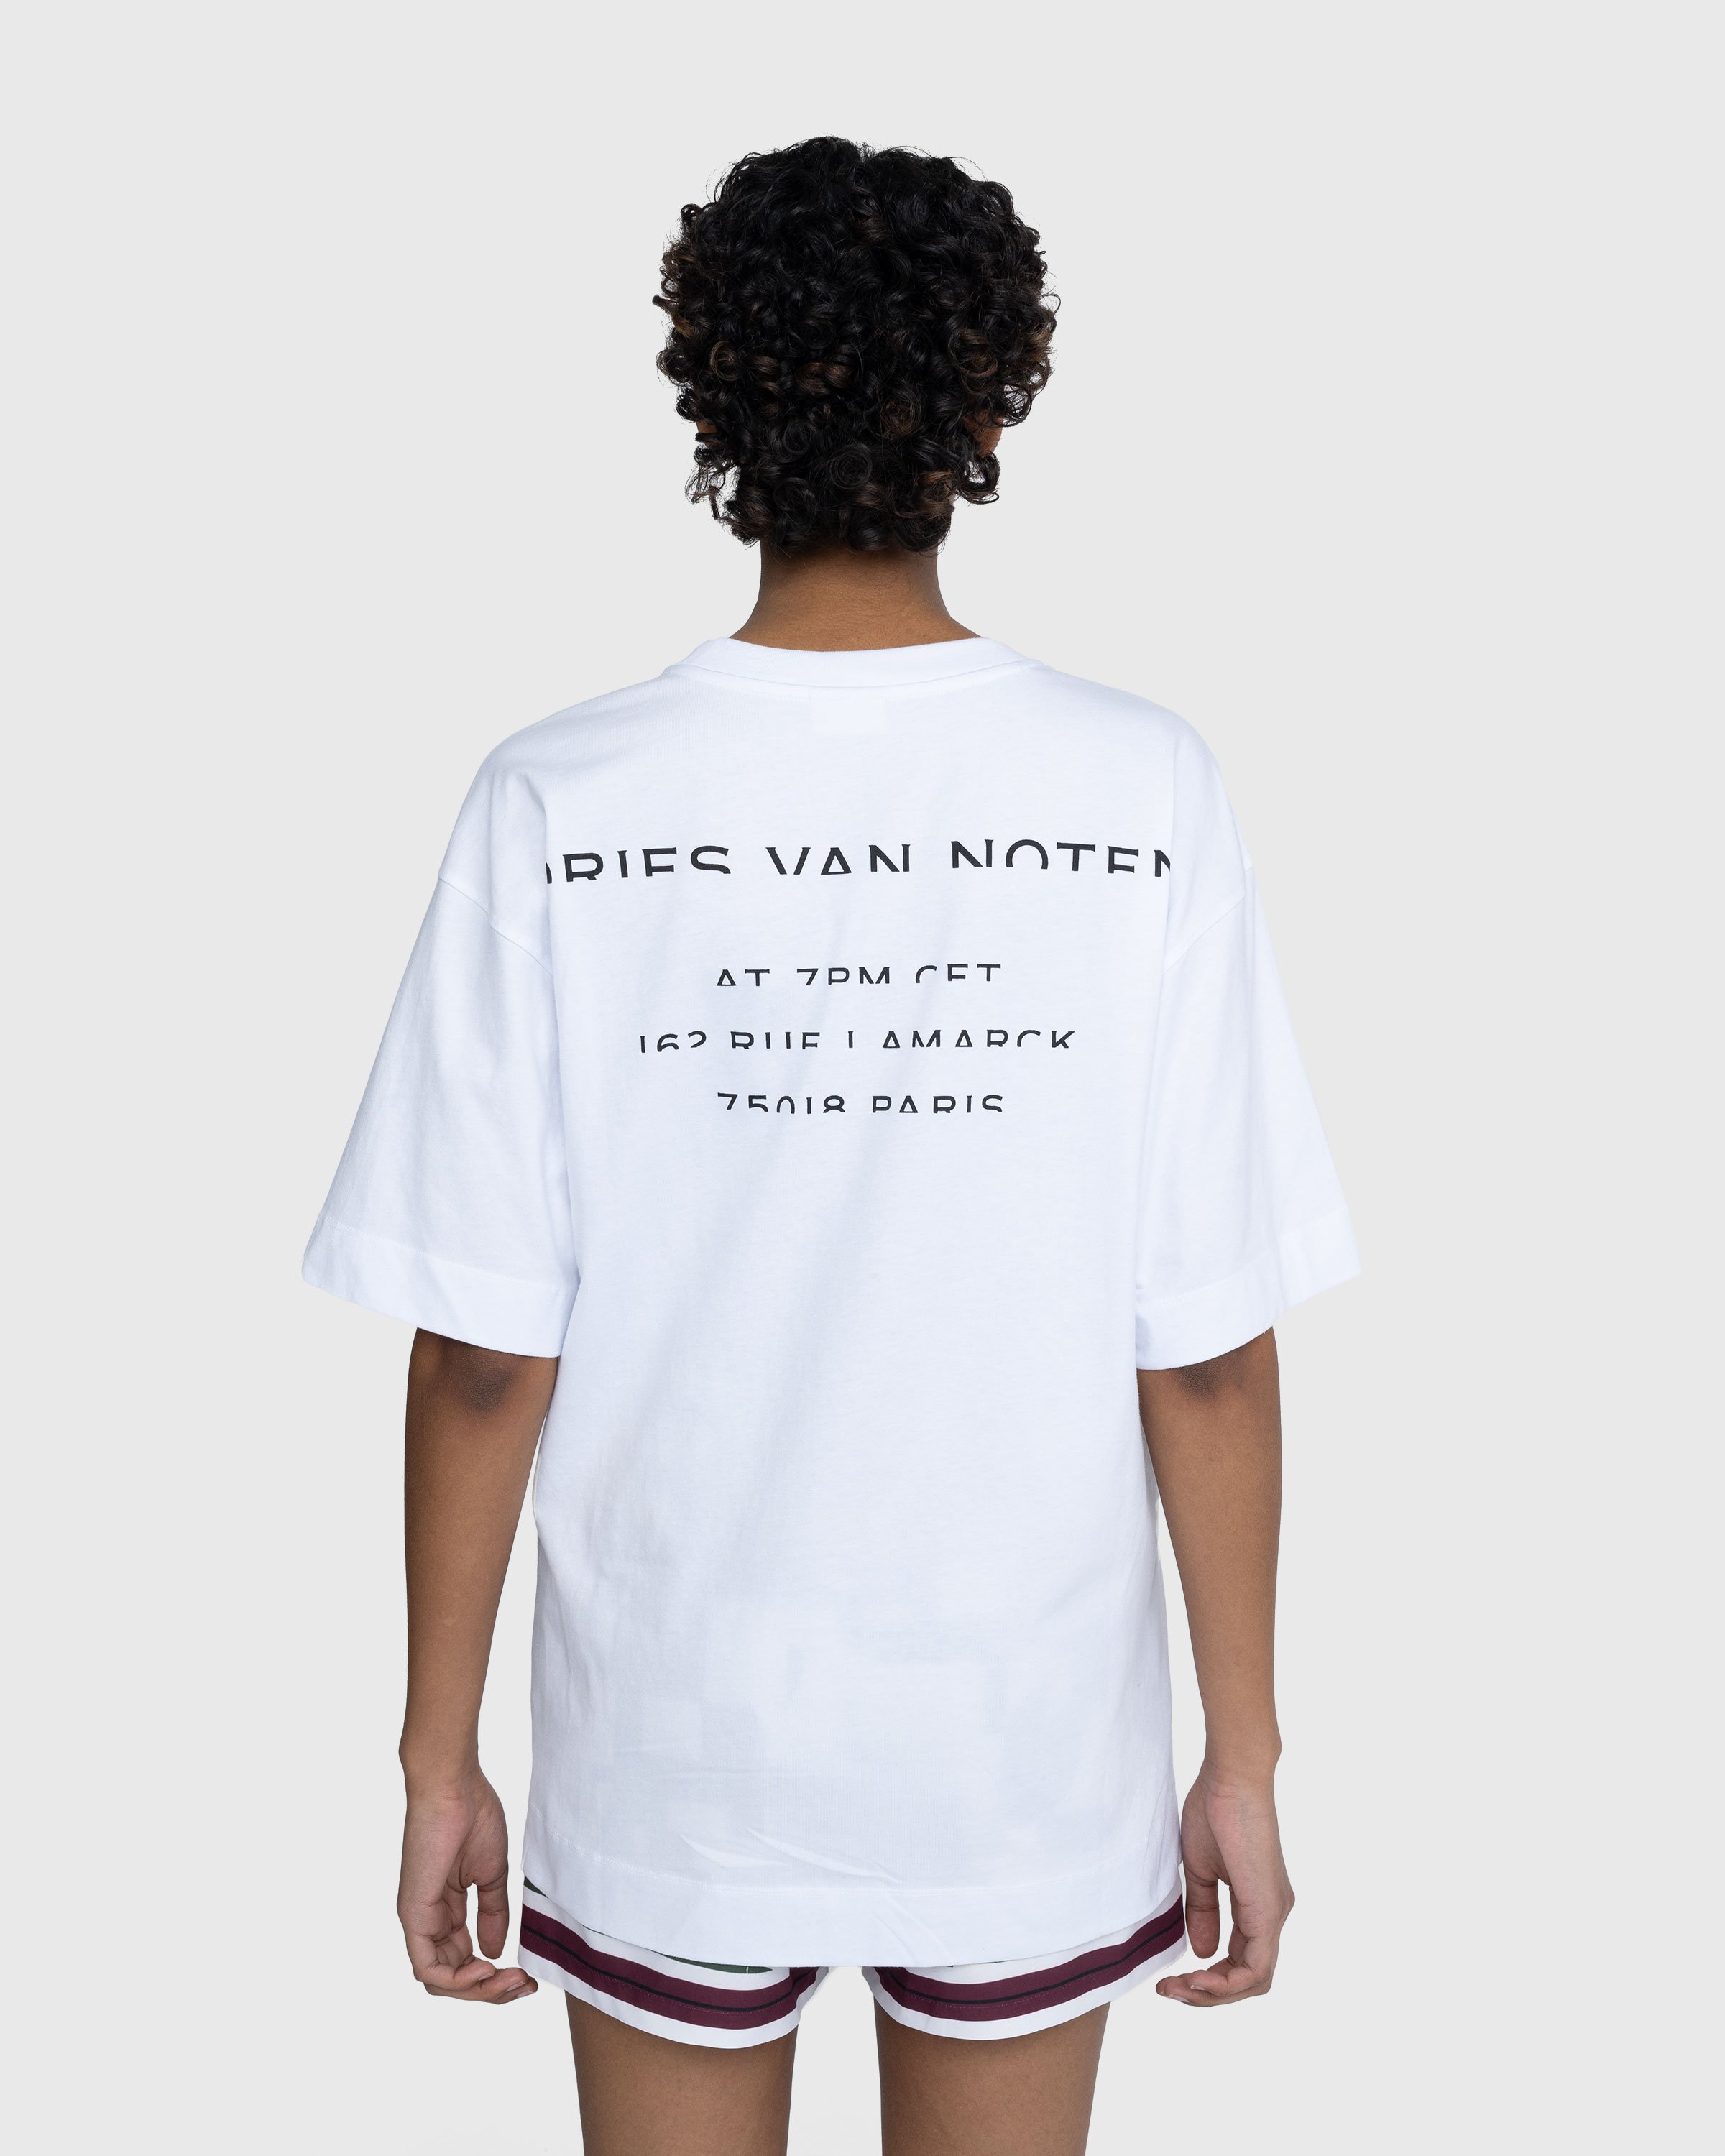 Dries van Noten - Heli T-Shirt White - Clothing - White - Image 3